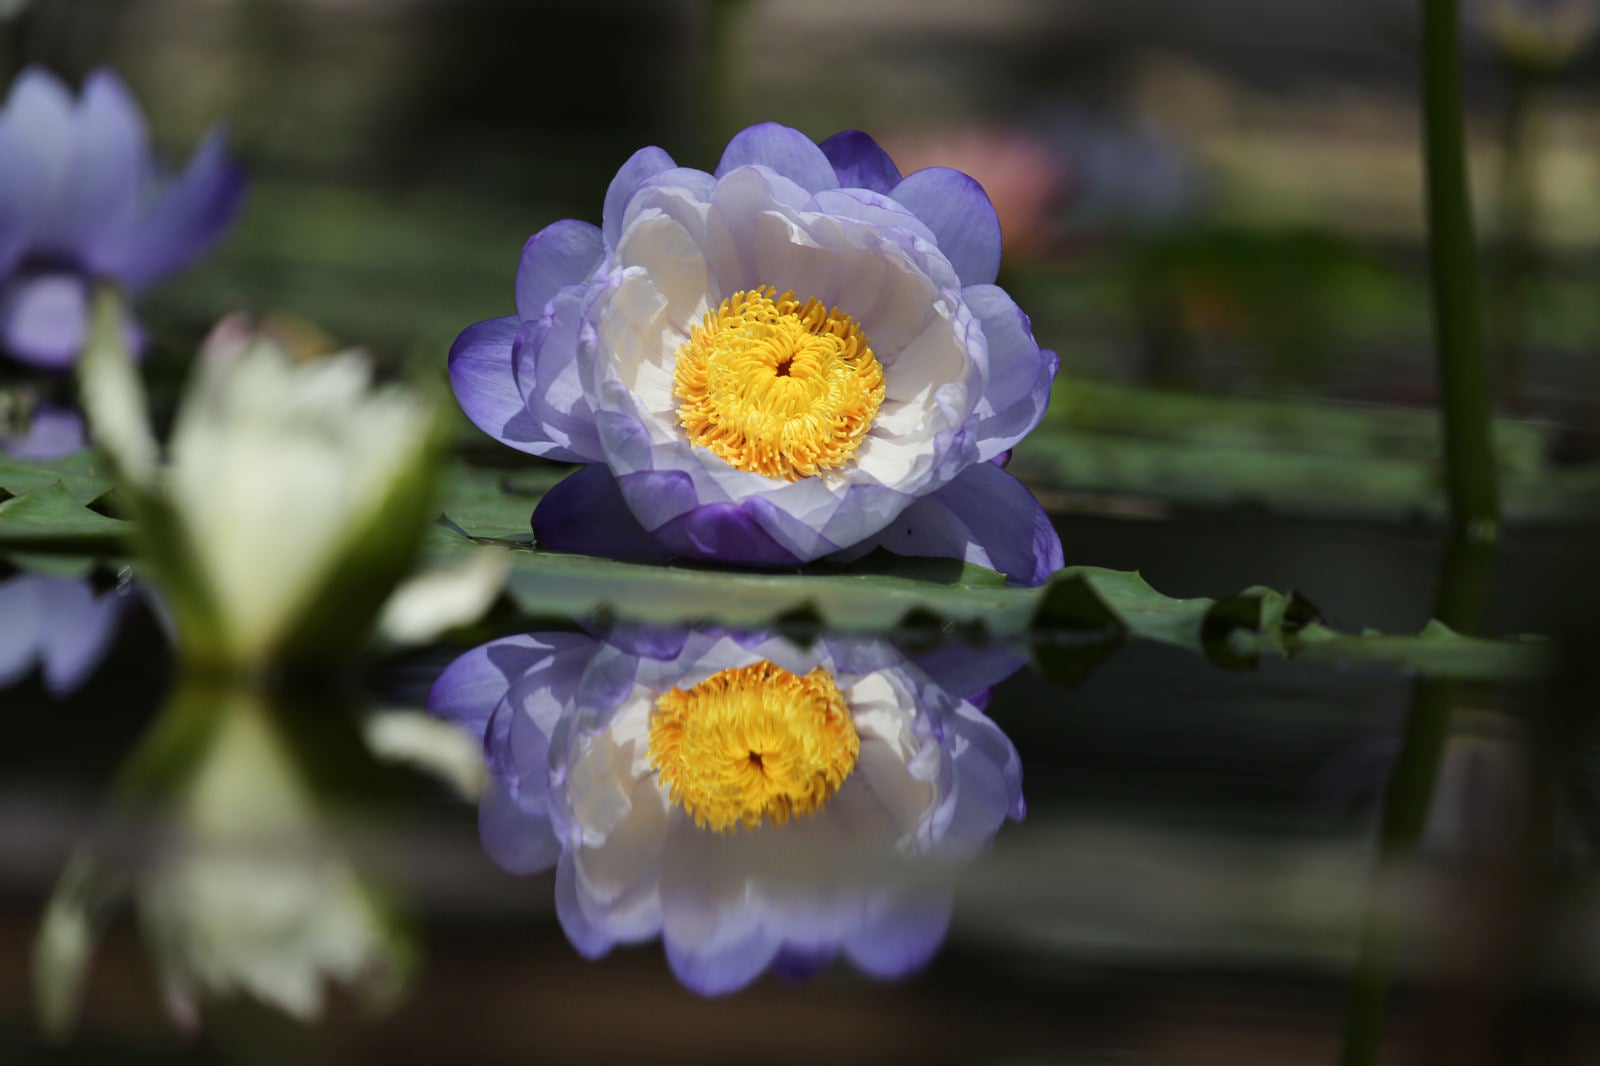 「水面で開花を待つ睡蓮」の写真